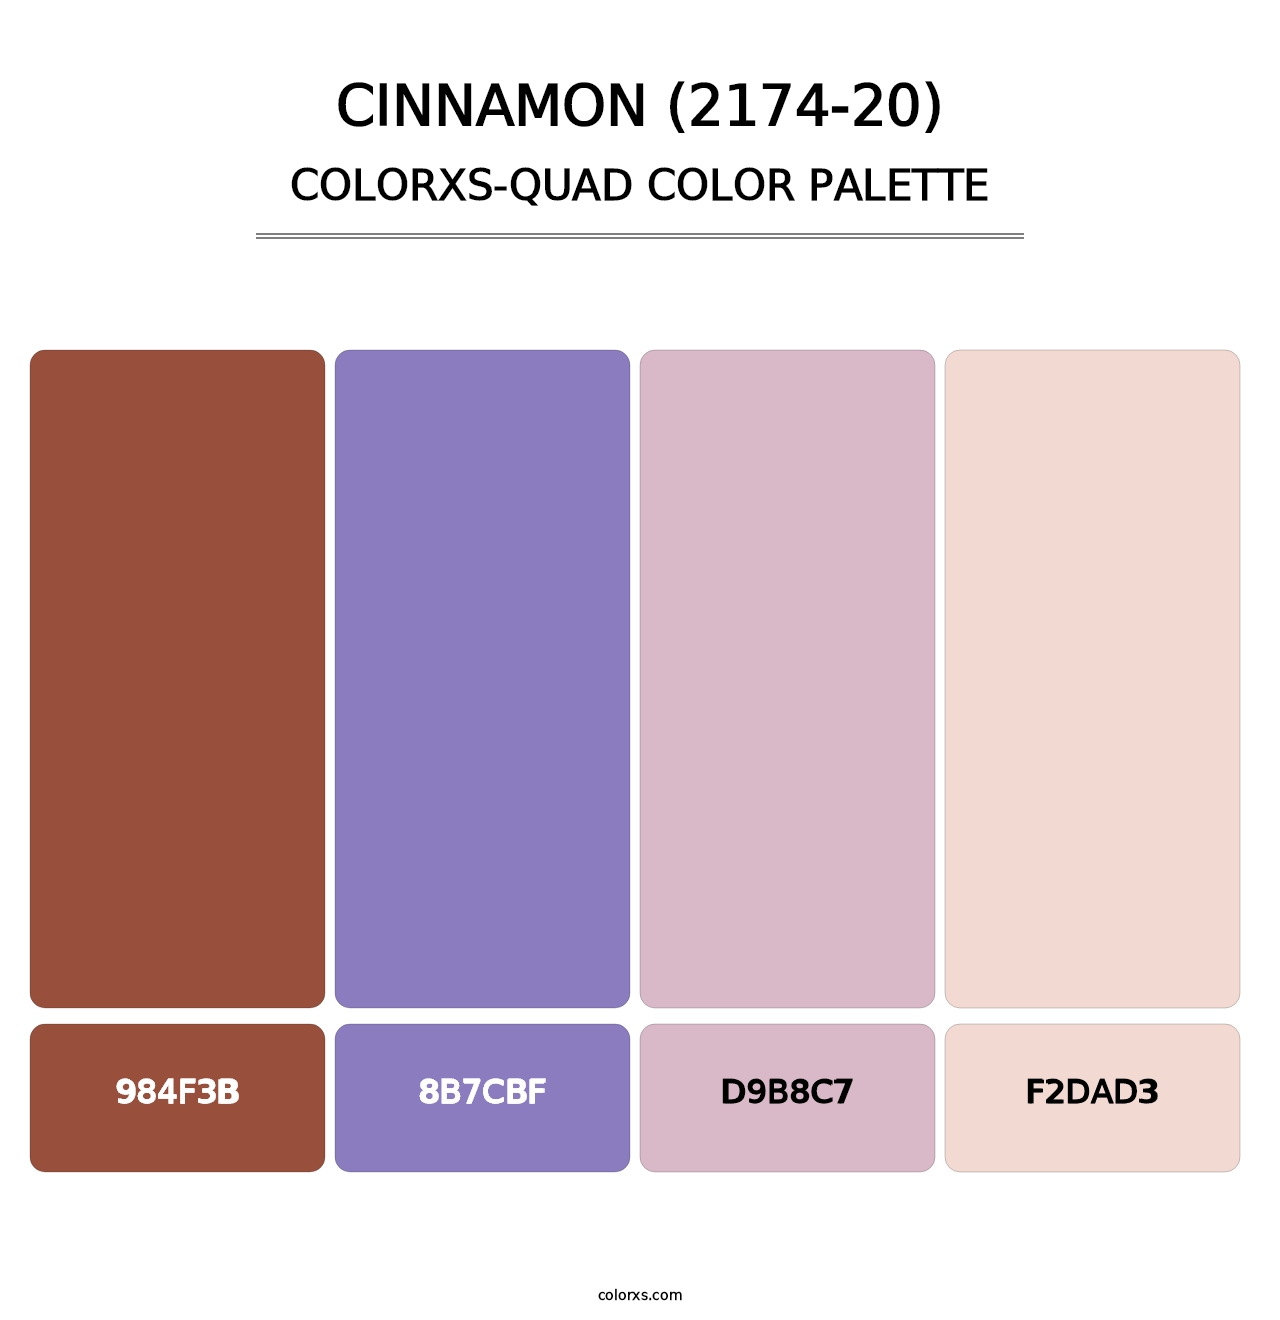 Cinnamon (2174-20) - Colorxs Quad Palette